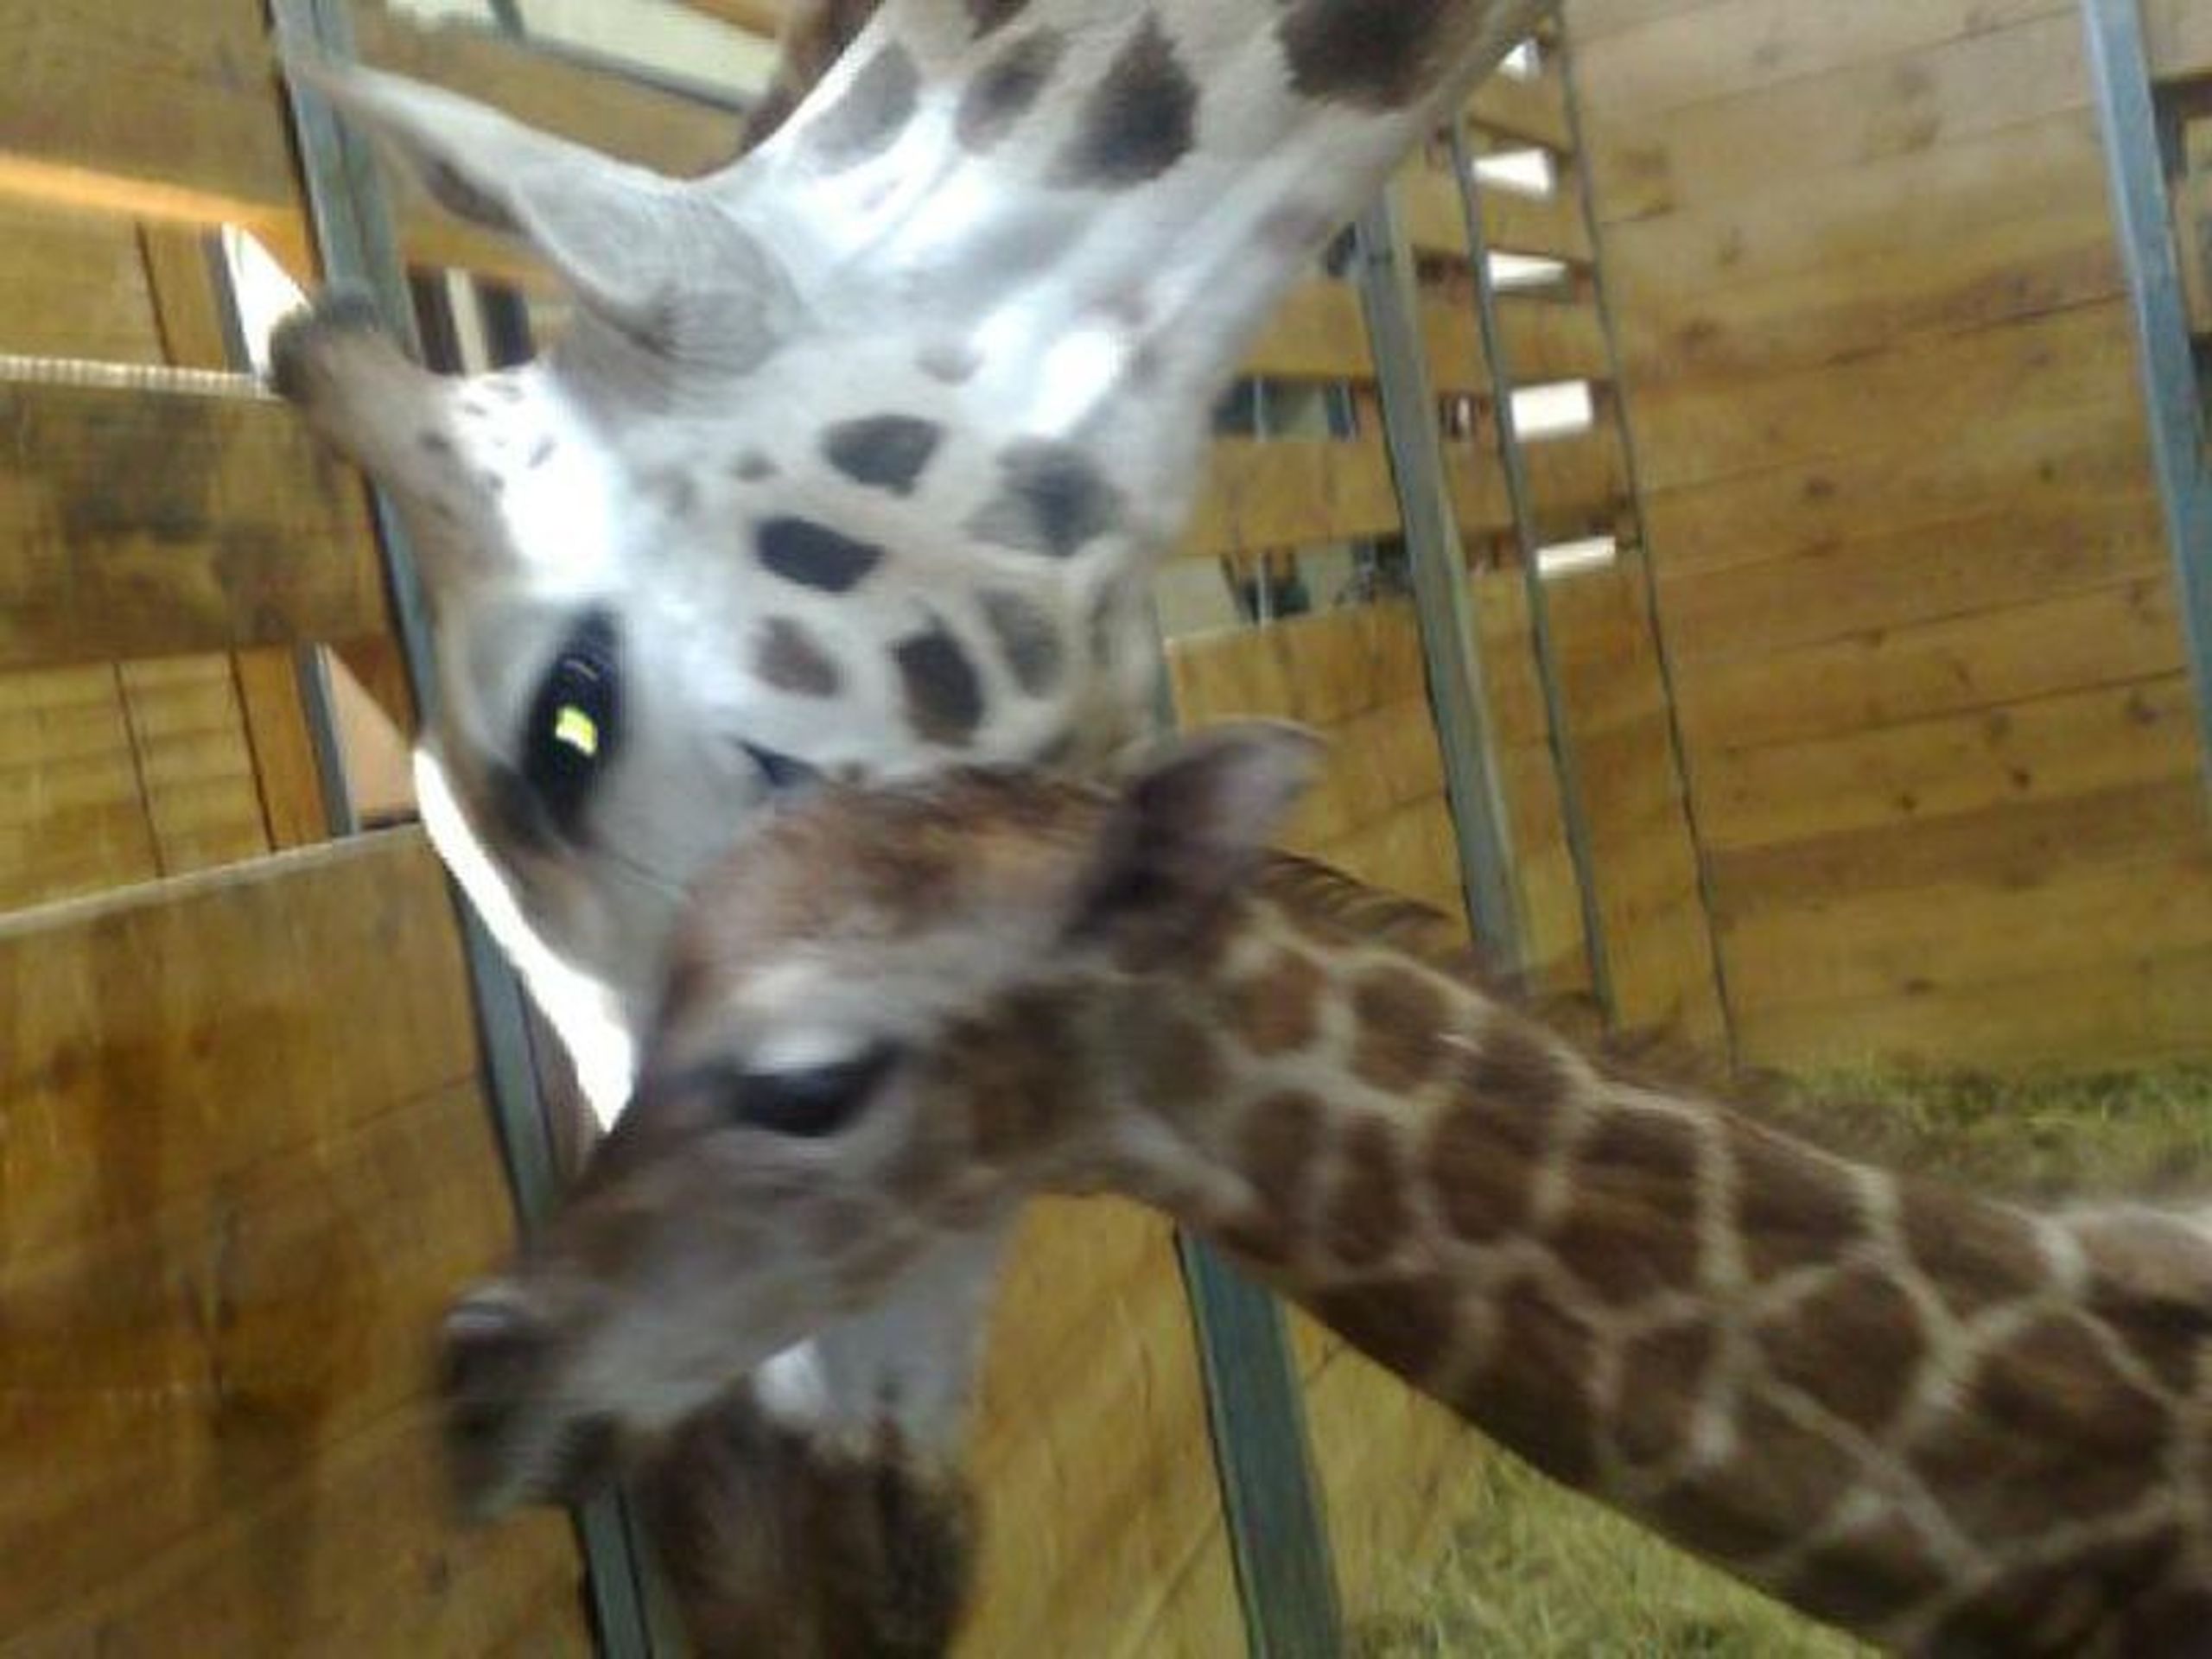 Porod žirafy Elišky - FOTOGALERIE: Porod žirafy Elišky v pražské zoo (5/10)